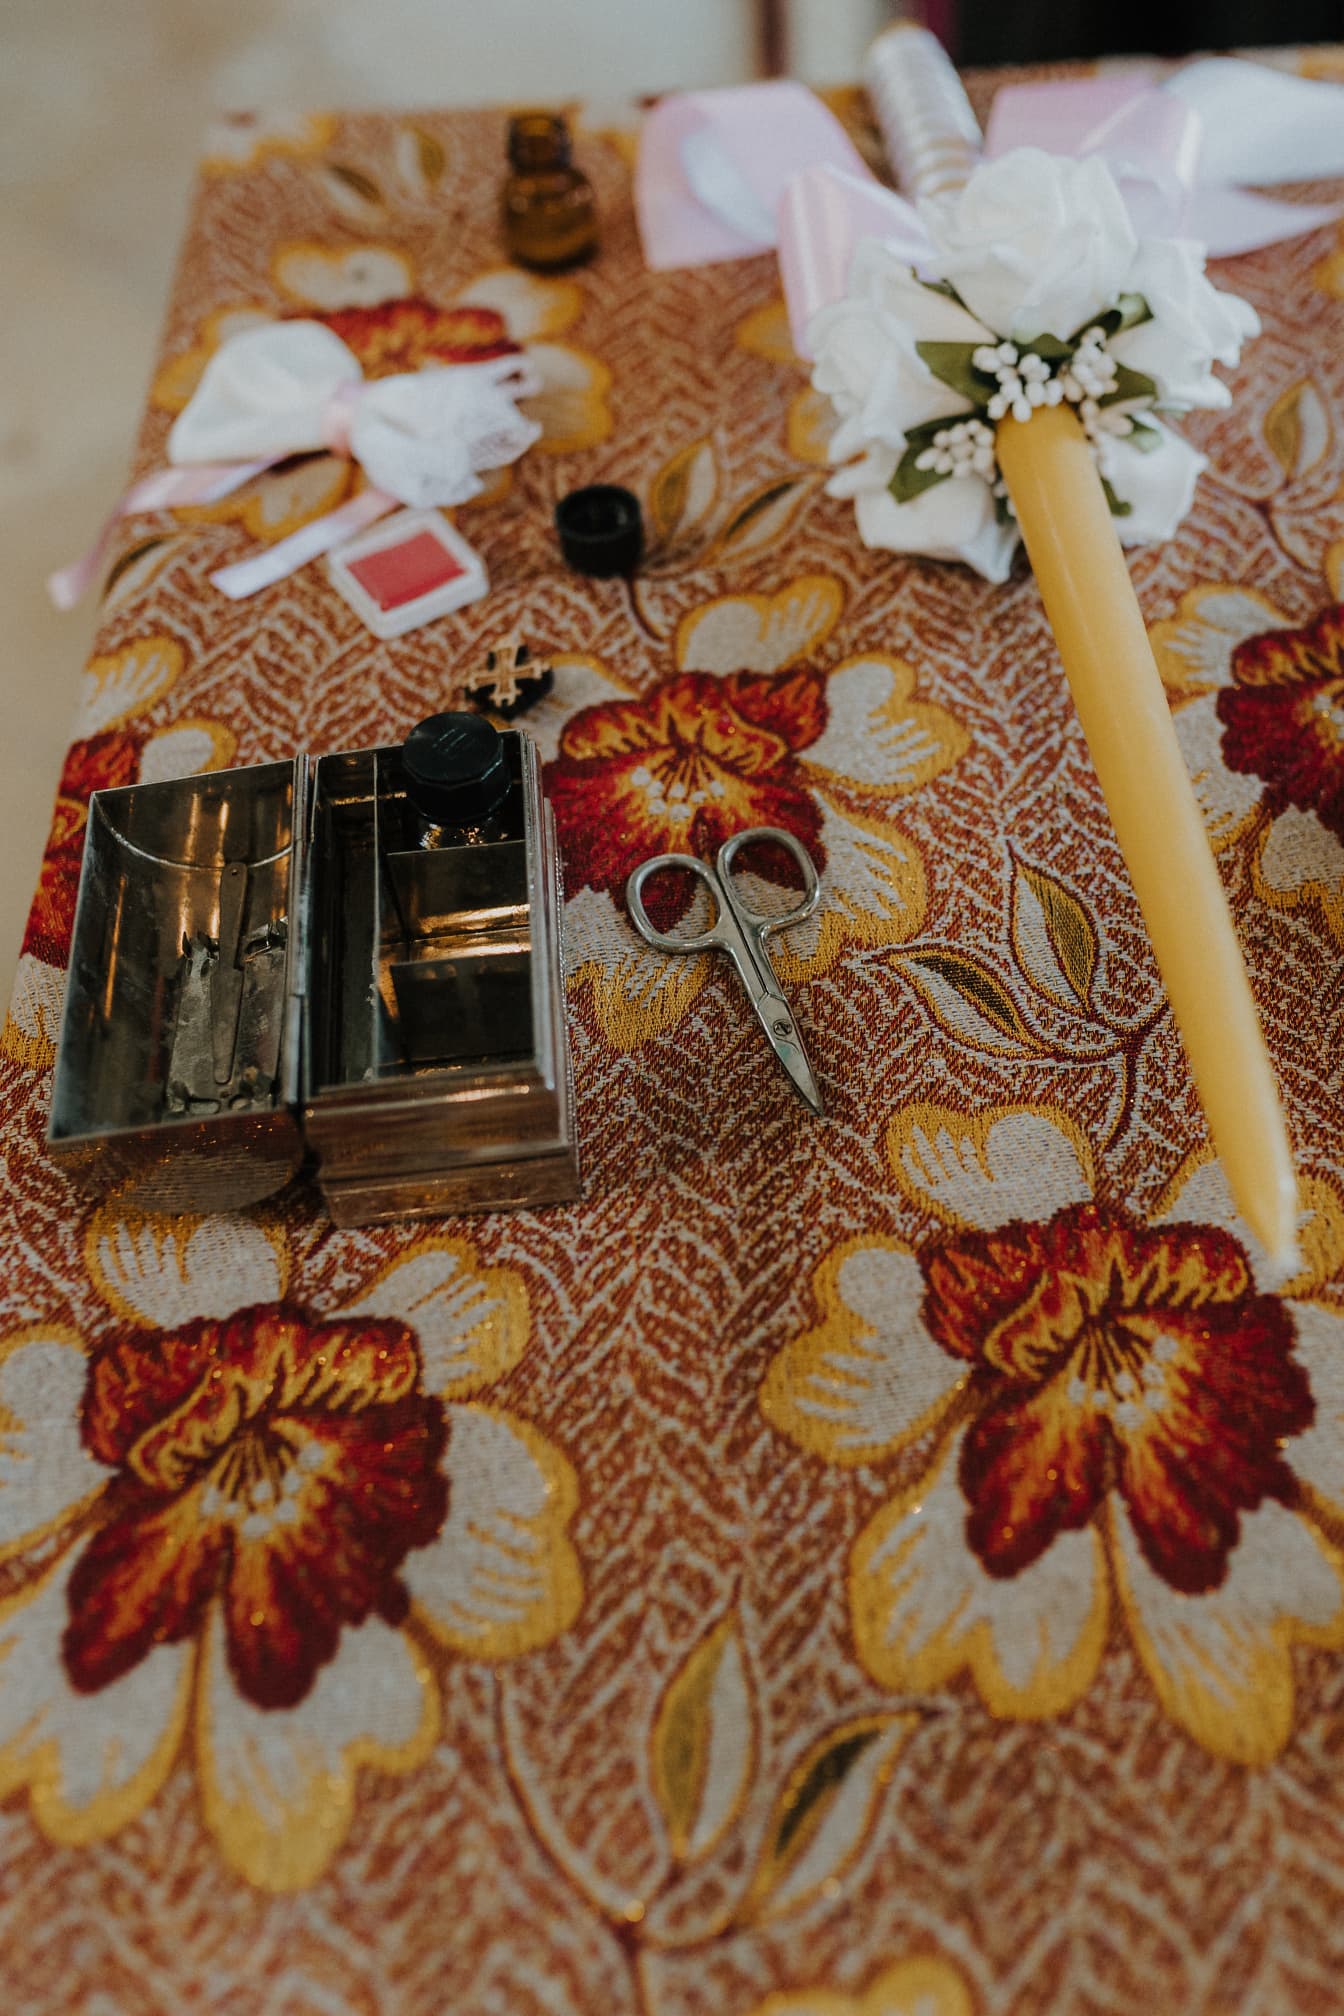 세례식을 위해 준비한 꽃무늬 식탁보 위에 가위와 촛불이 있는 금속 상자